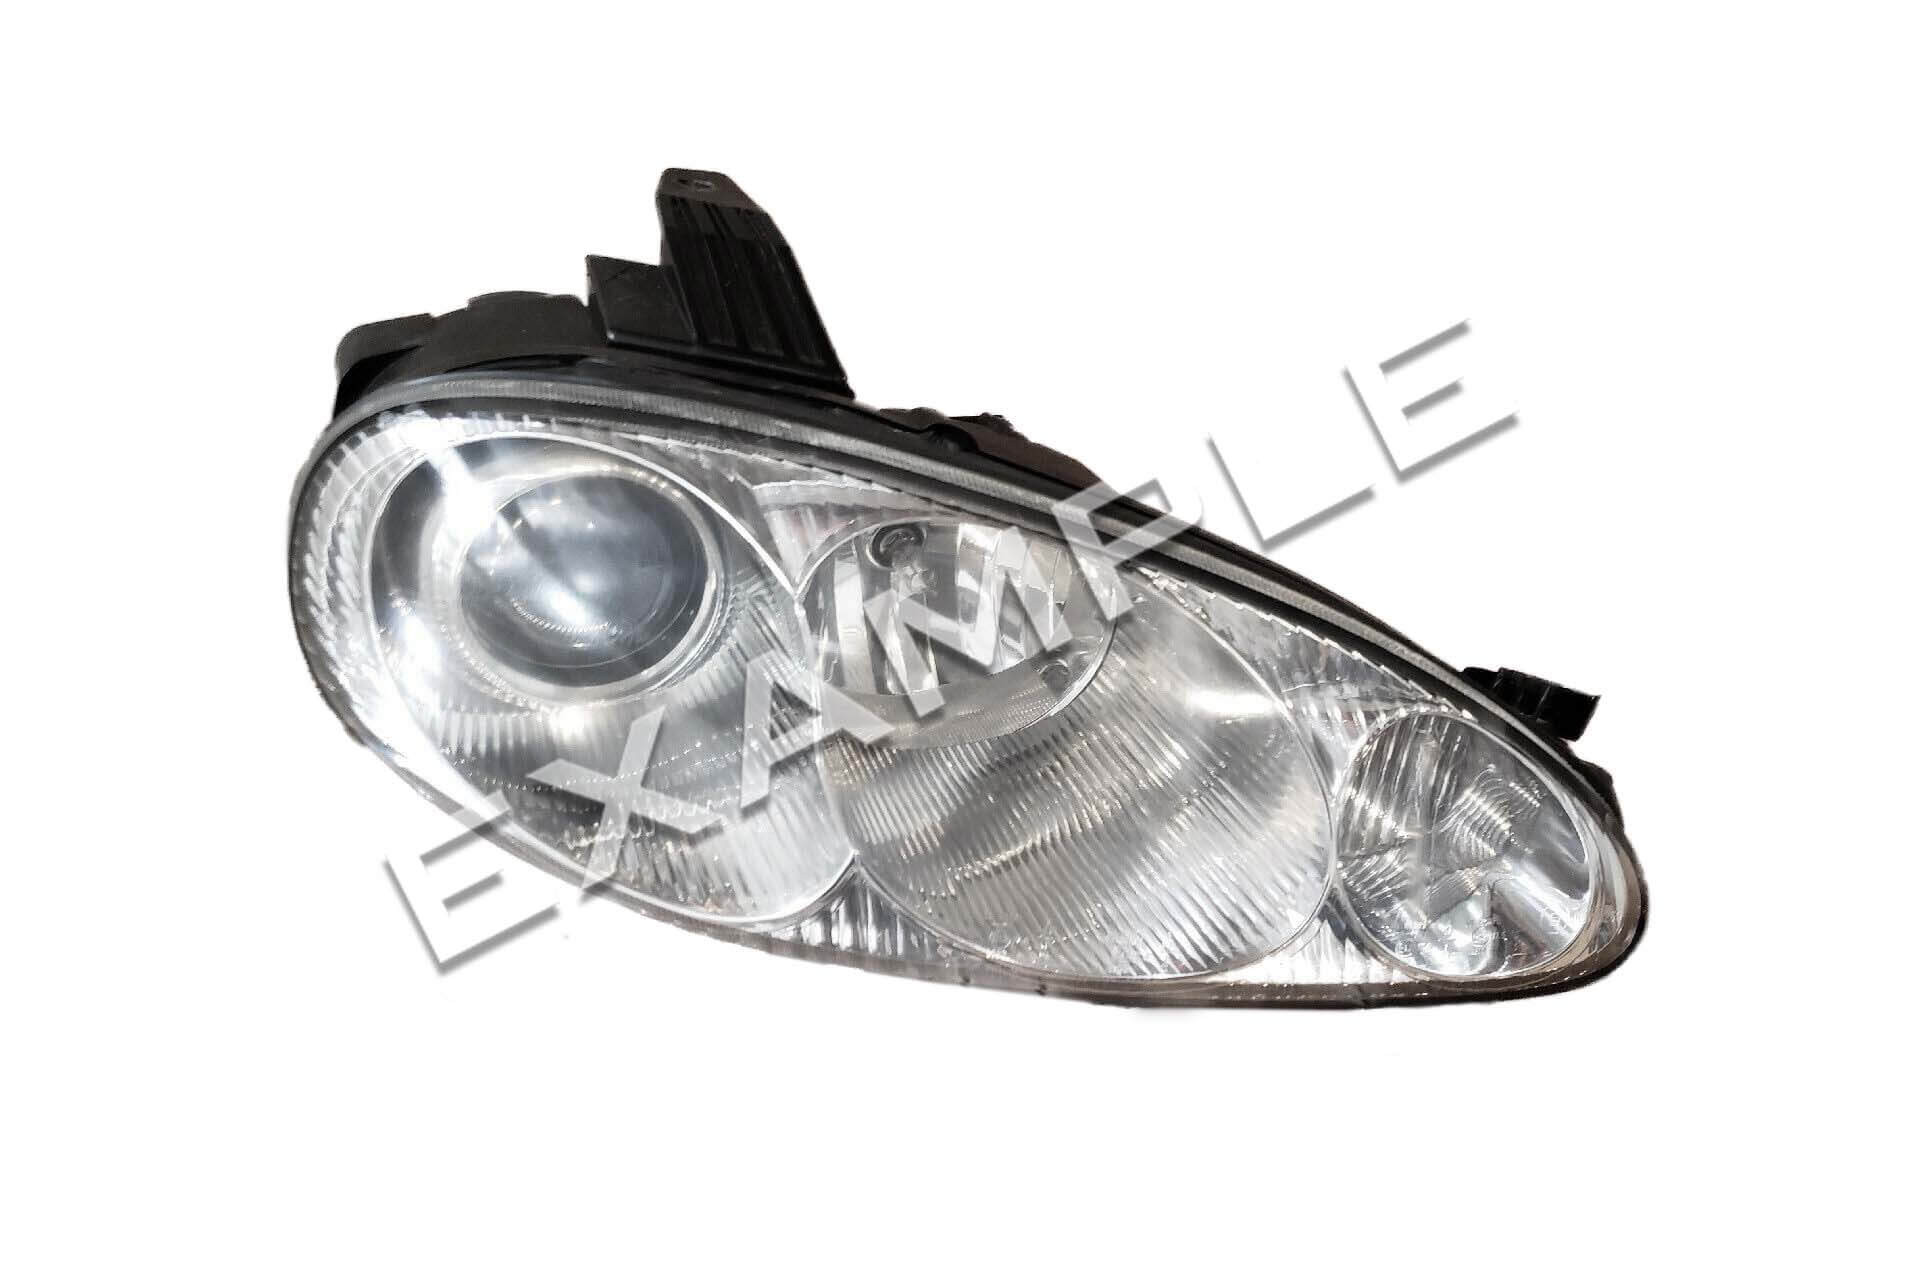 Mazda MX-5 Miata NB2 FL 01-05 Bi-LED light upgrade retrofit kit for H7 halogen projector headlights